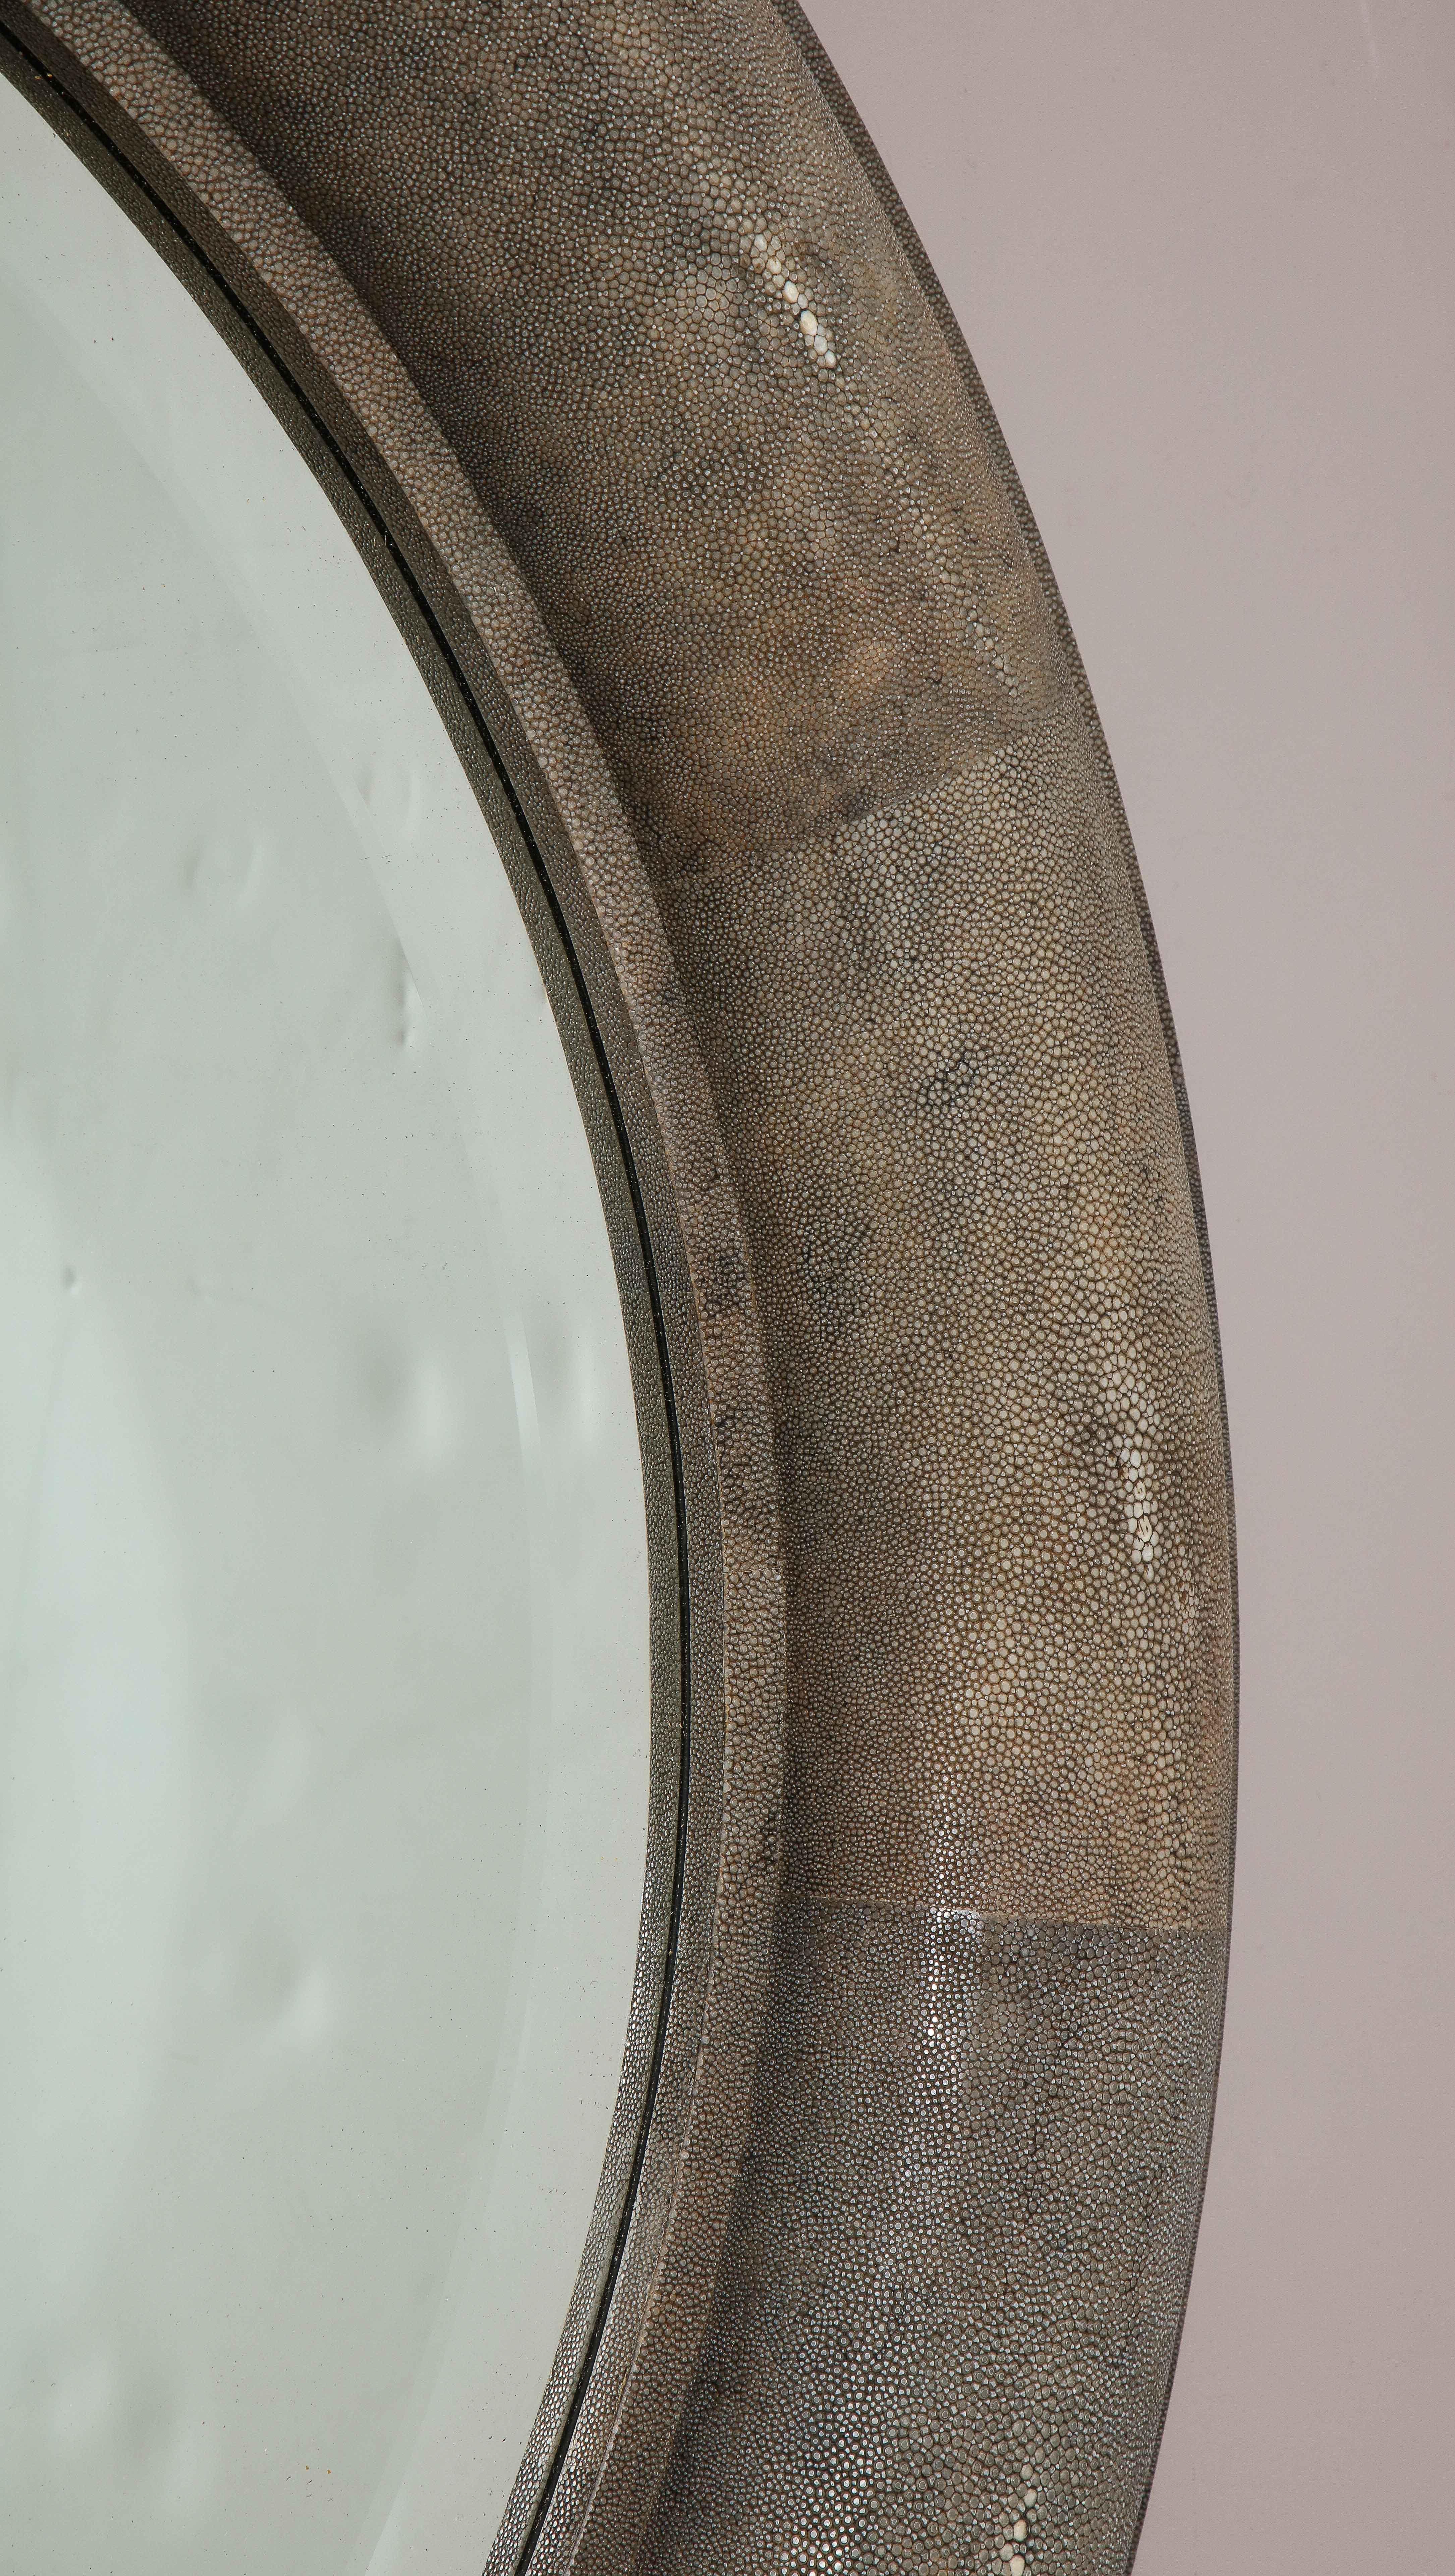 American Large Shagreen Beveled Circular Mirror by Karl Springer